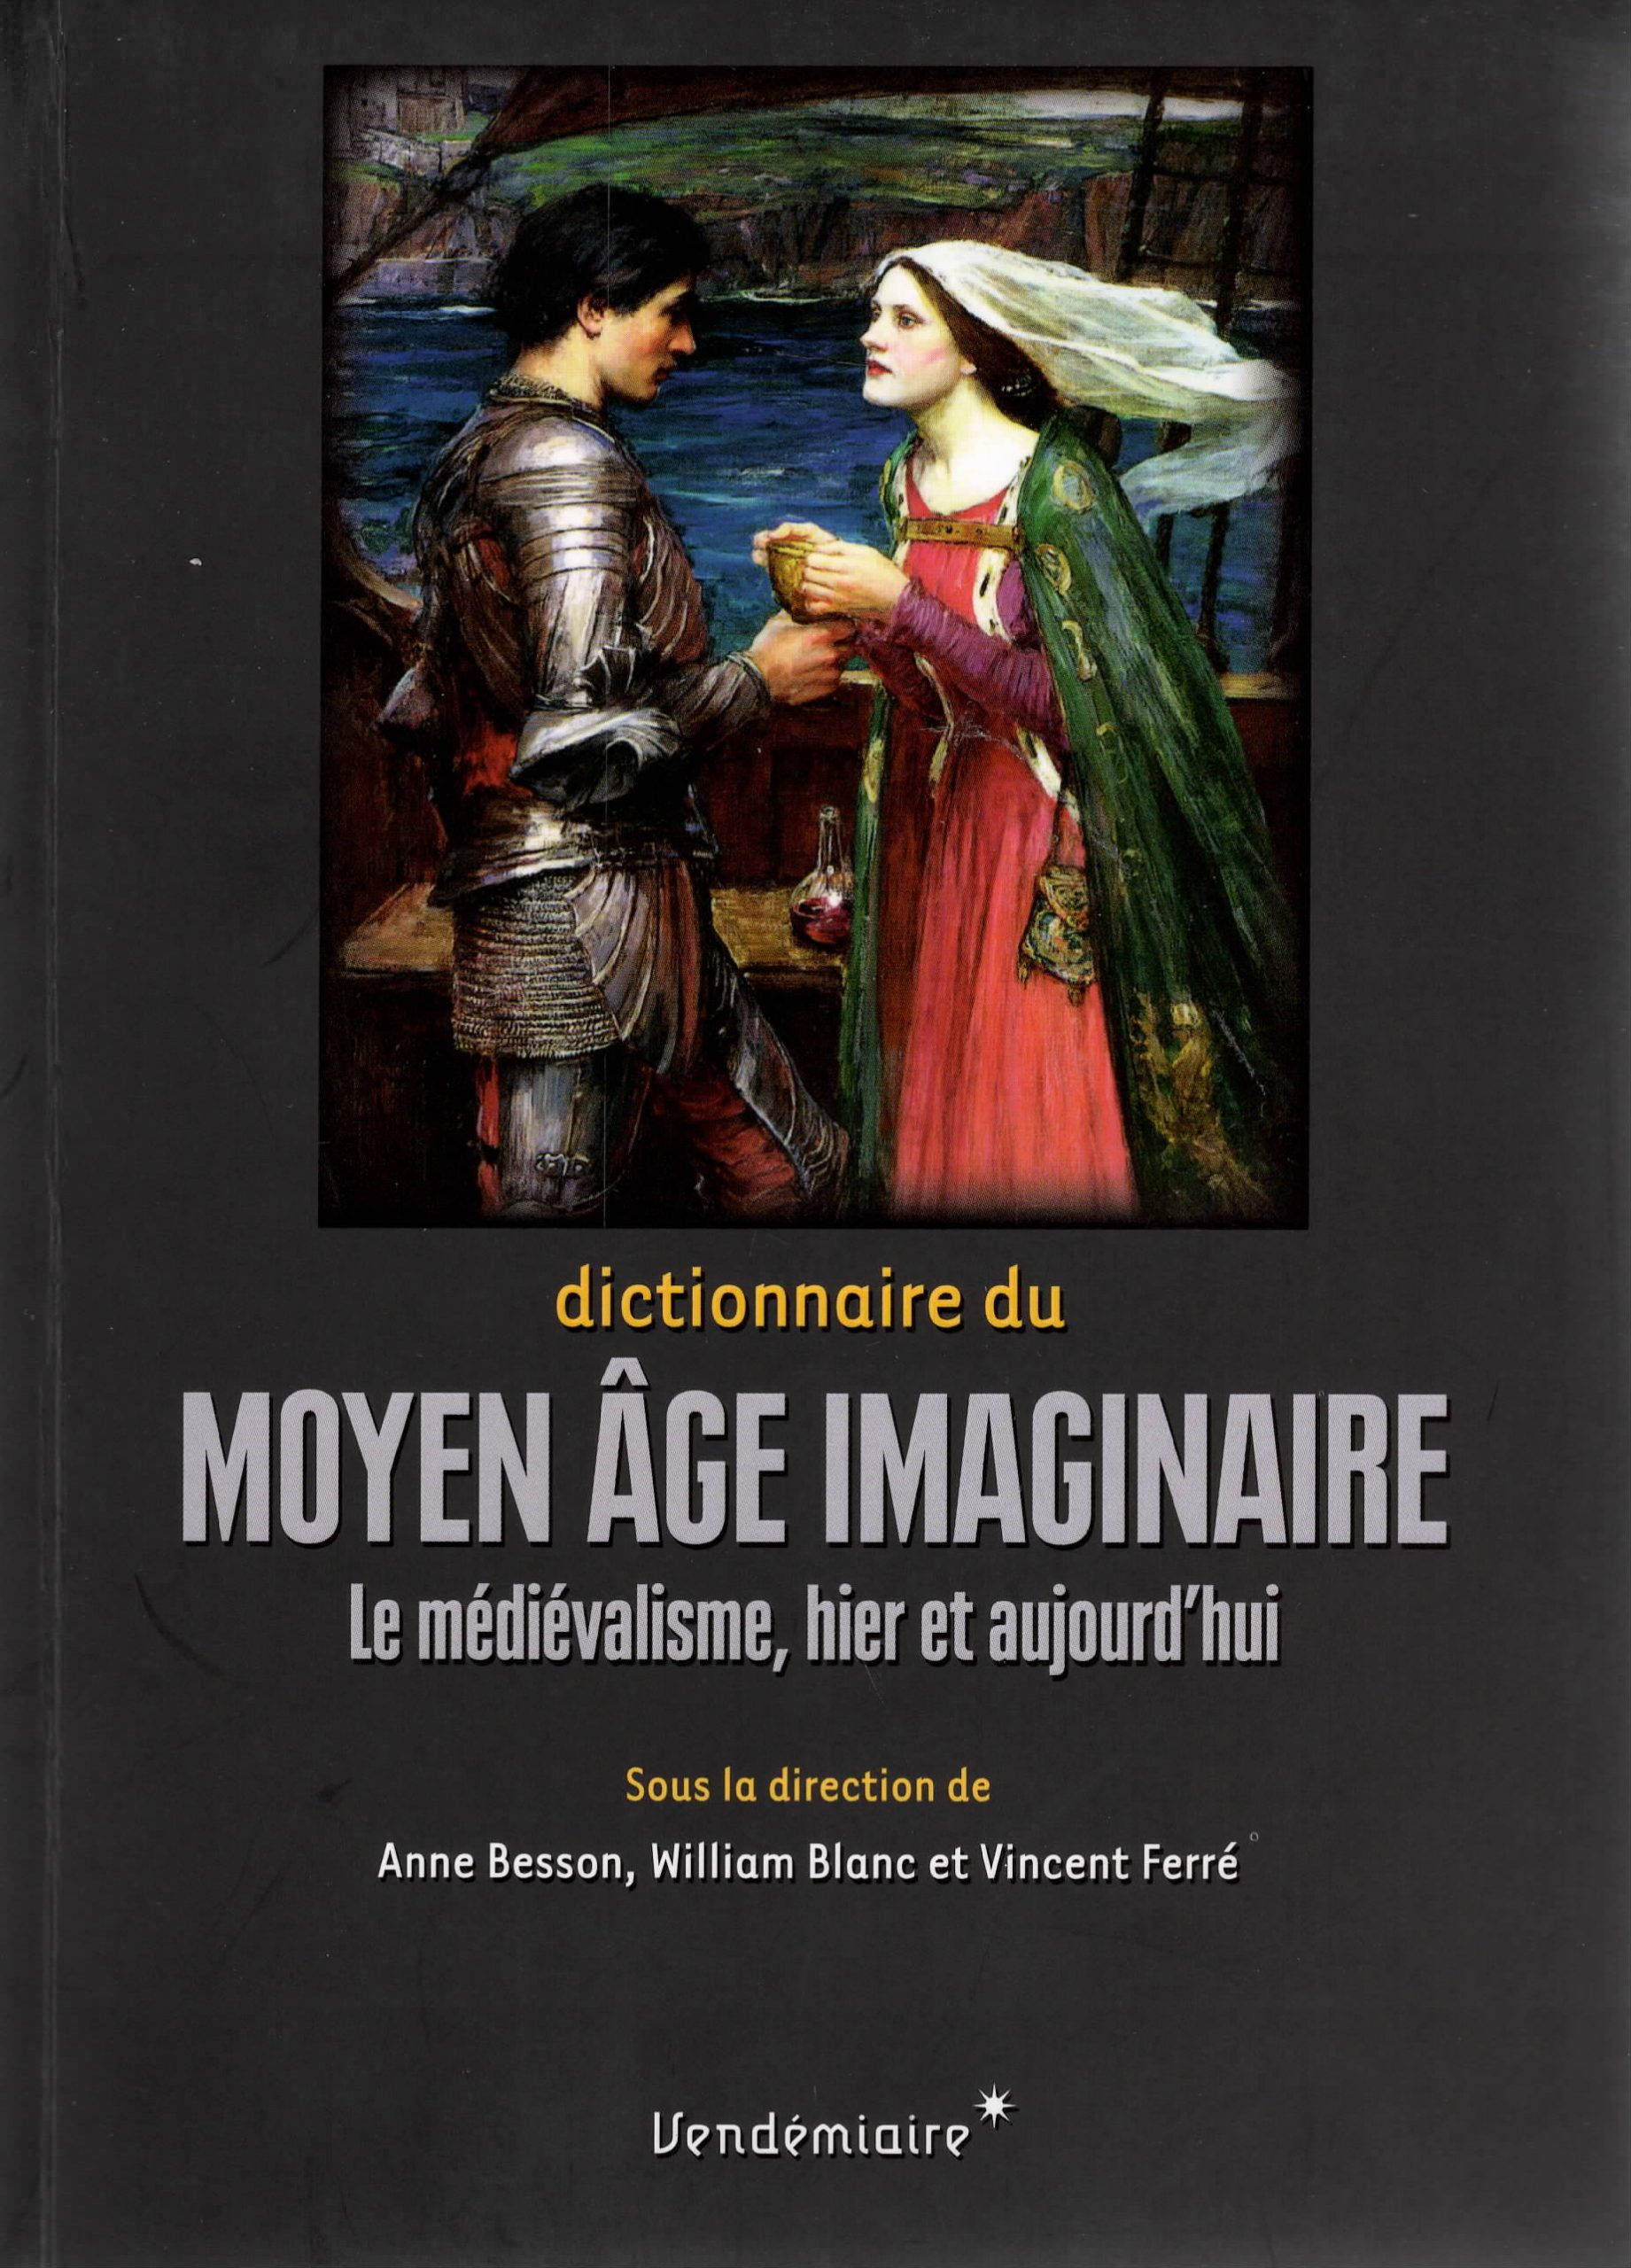 Dictionaire du Moyen Âge Imaginaire: le médiévalisme, hier et aujourd’hui